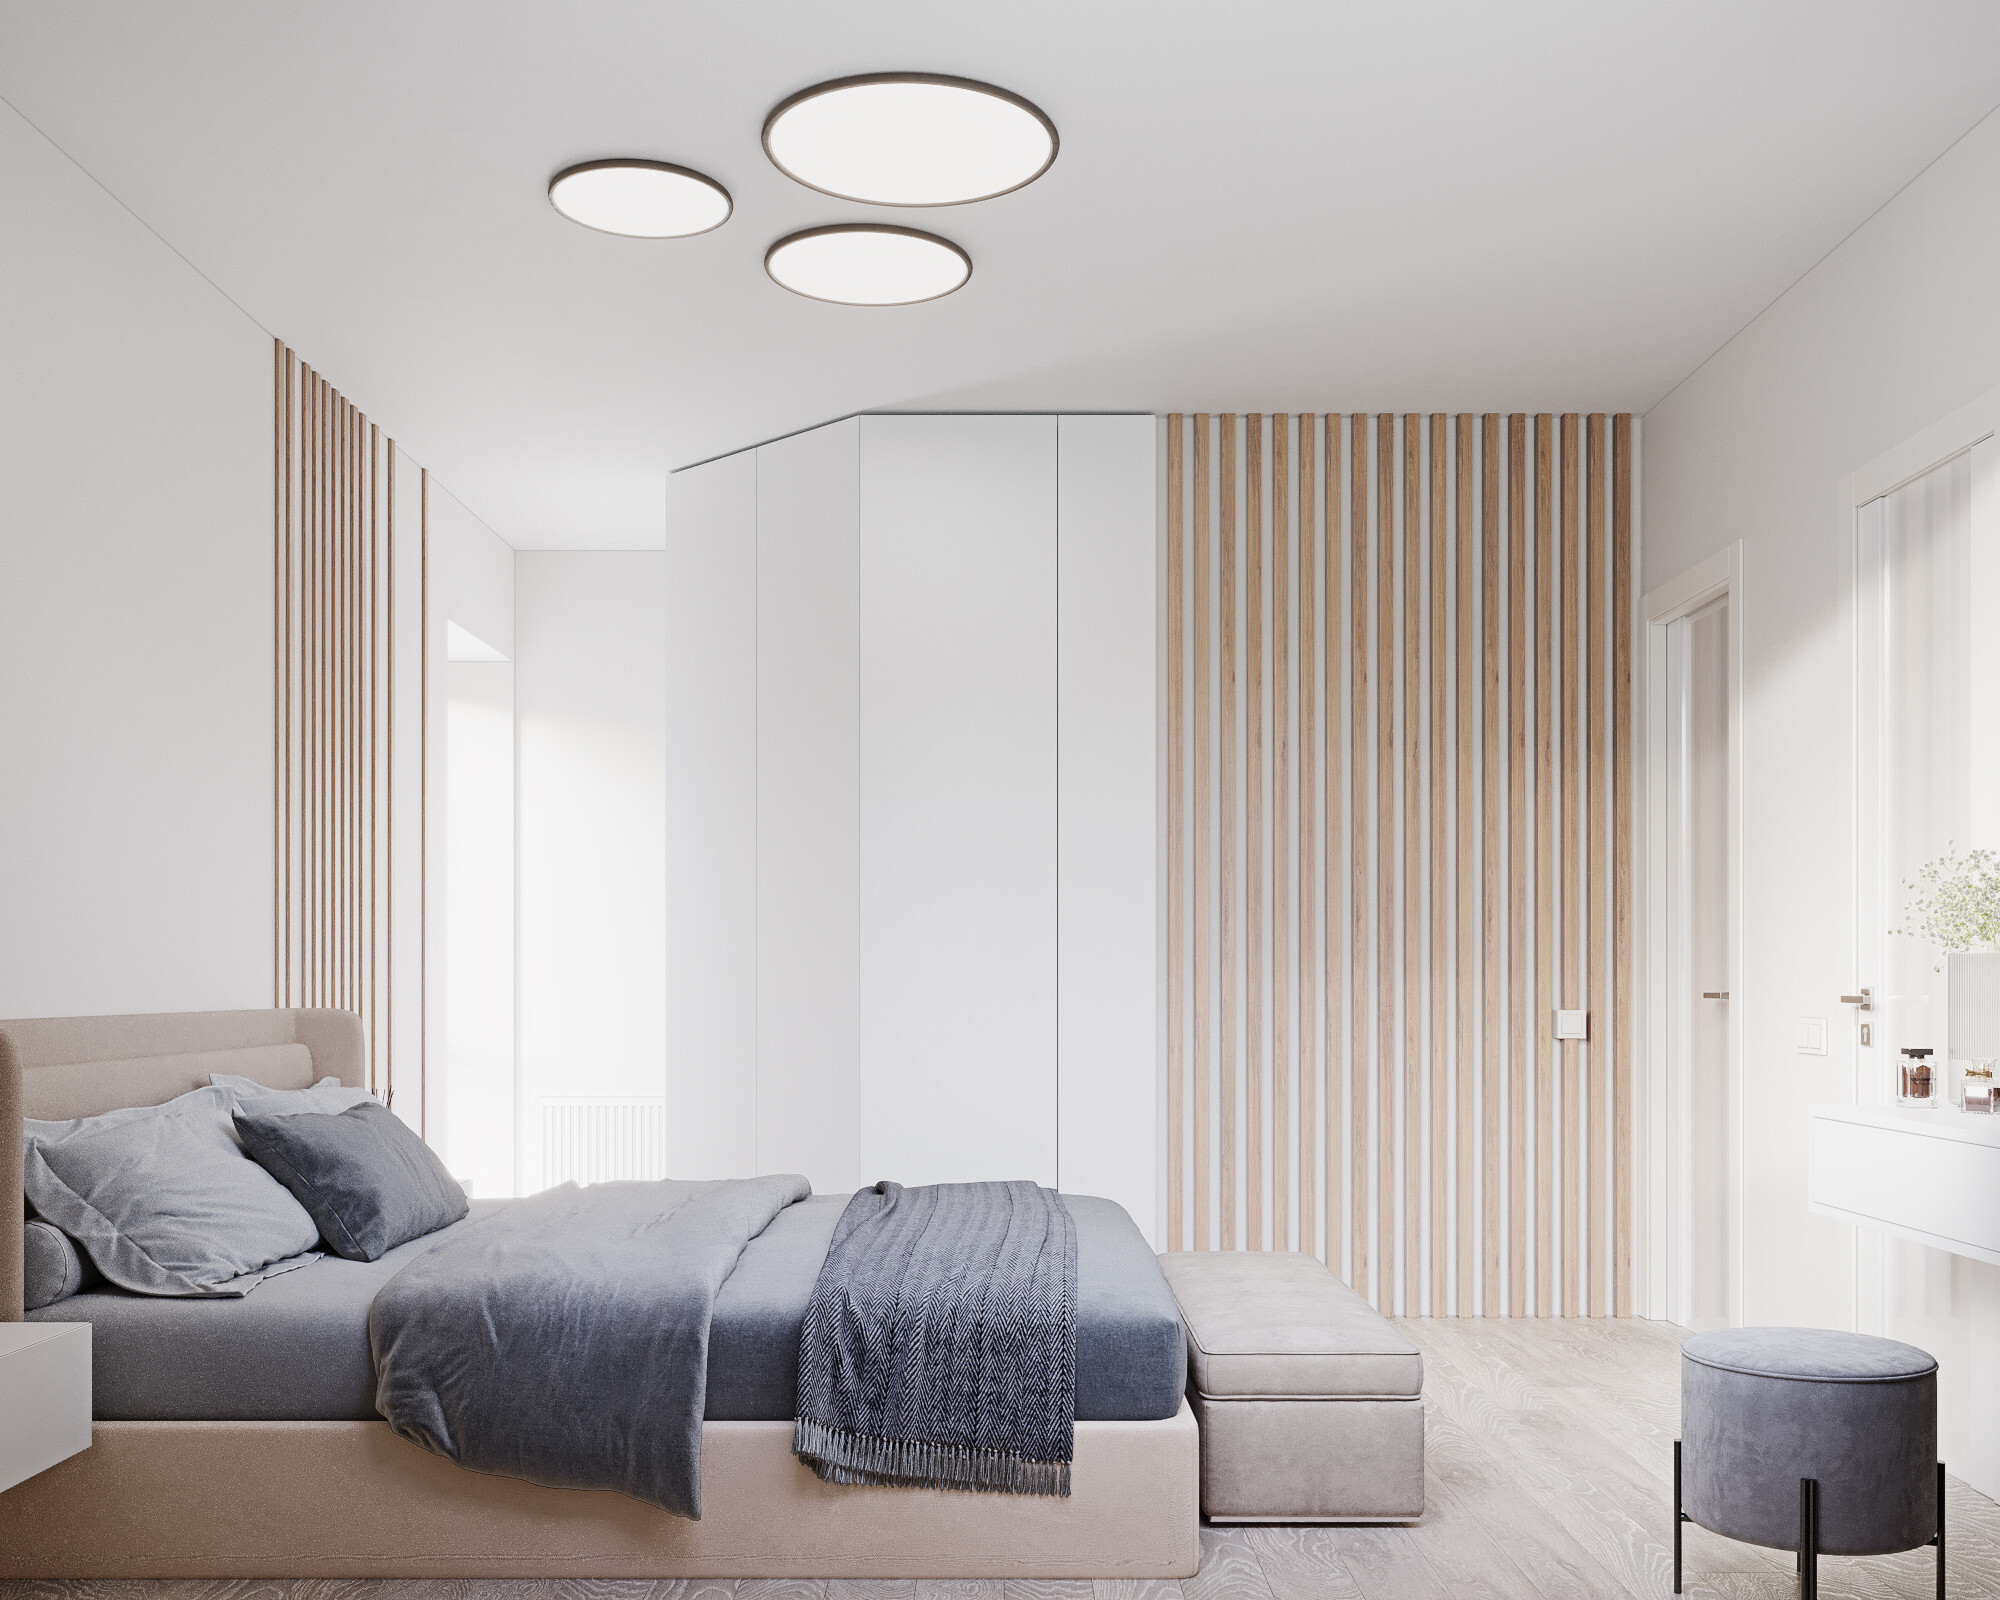 Интерьер спальни с рейками с подсветкой, подсветкой светодиодной и светильниками над кроватью в современном стиле